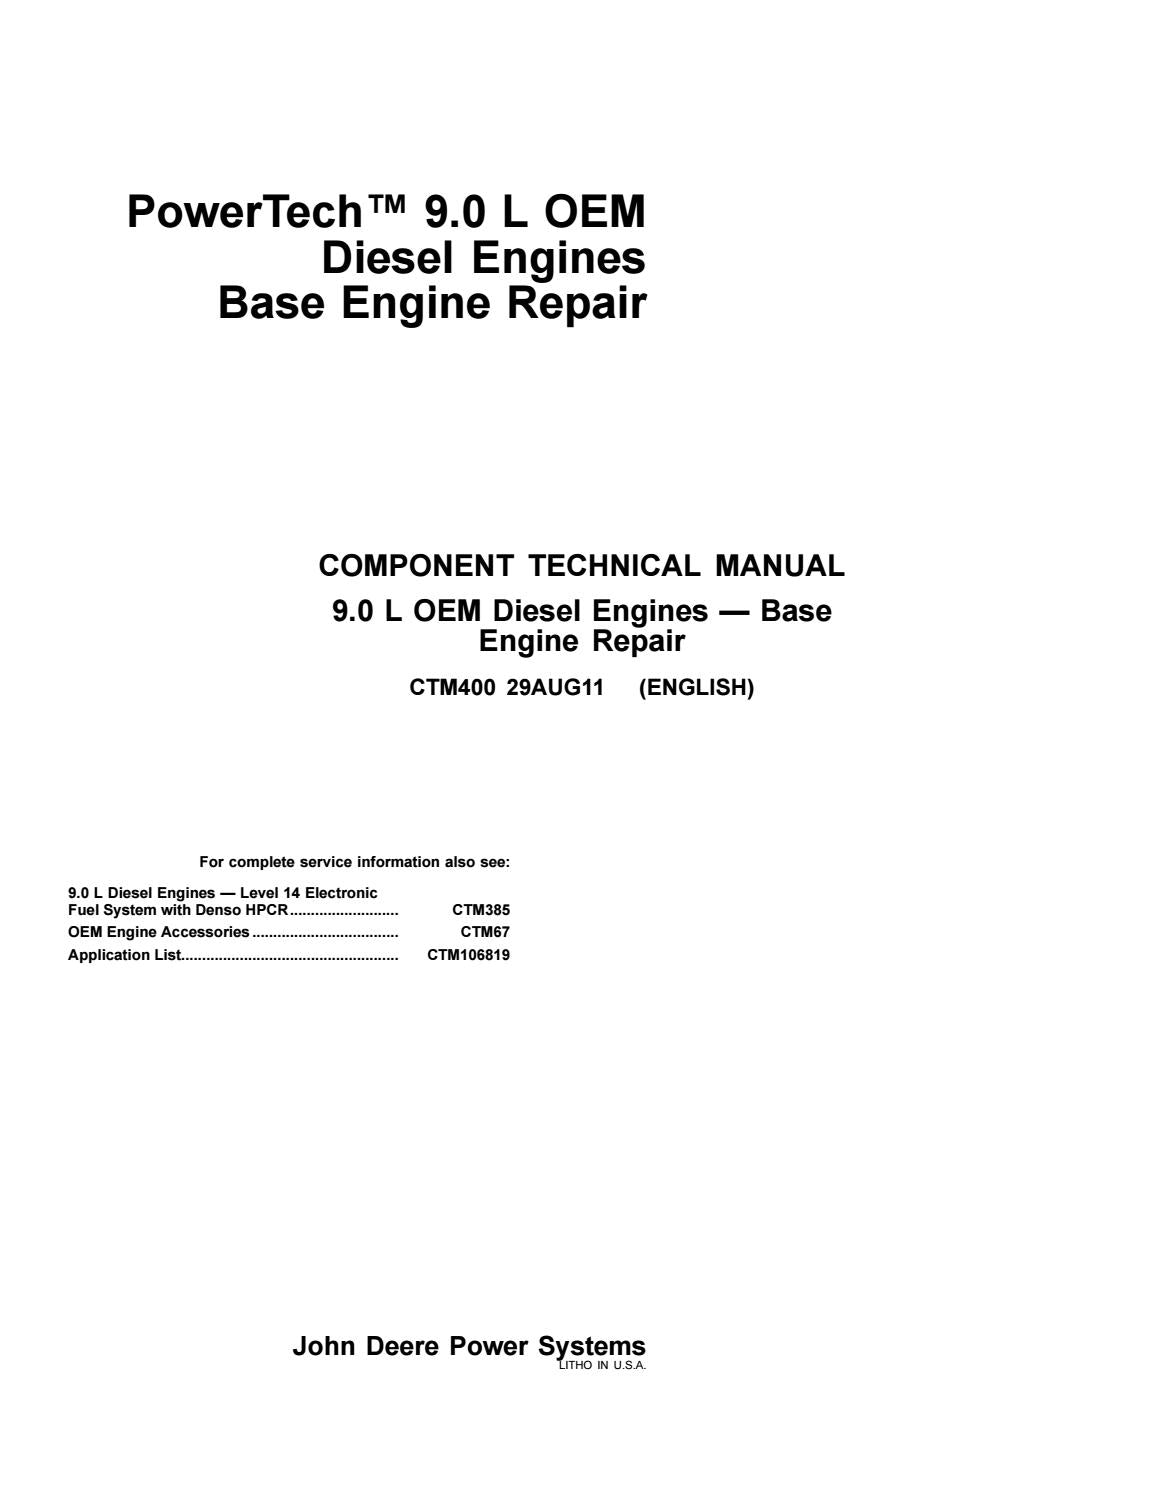 CTM400 - John Deere Powertech Plus 9.0 L Engine Repair Service Manual